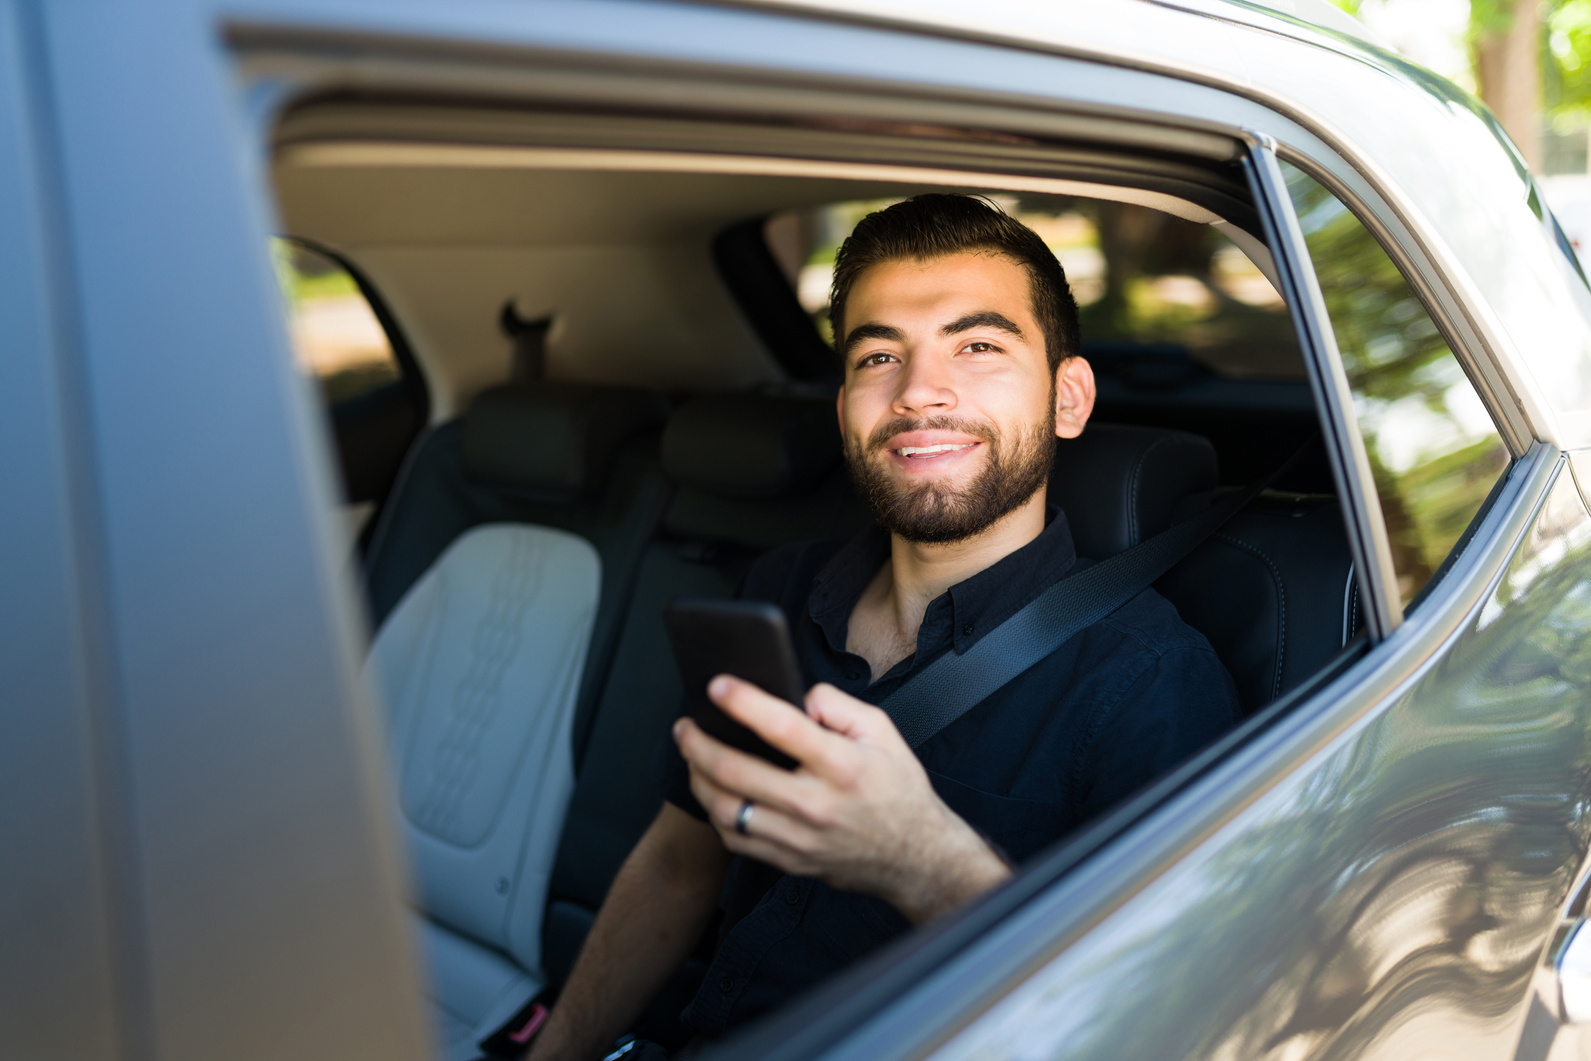 Cheerful passenger using a rideshare app